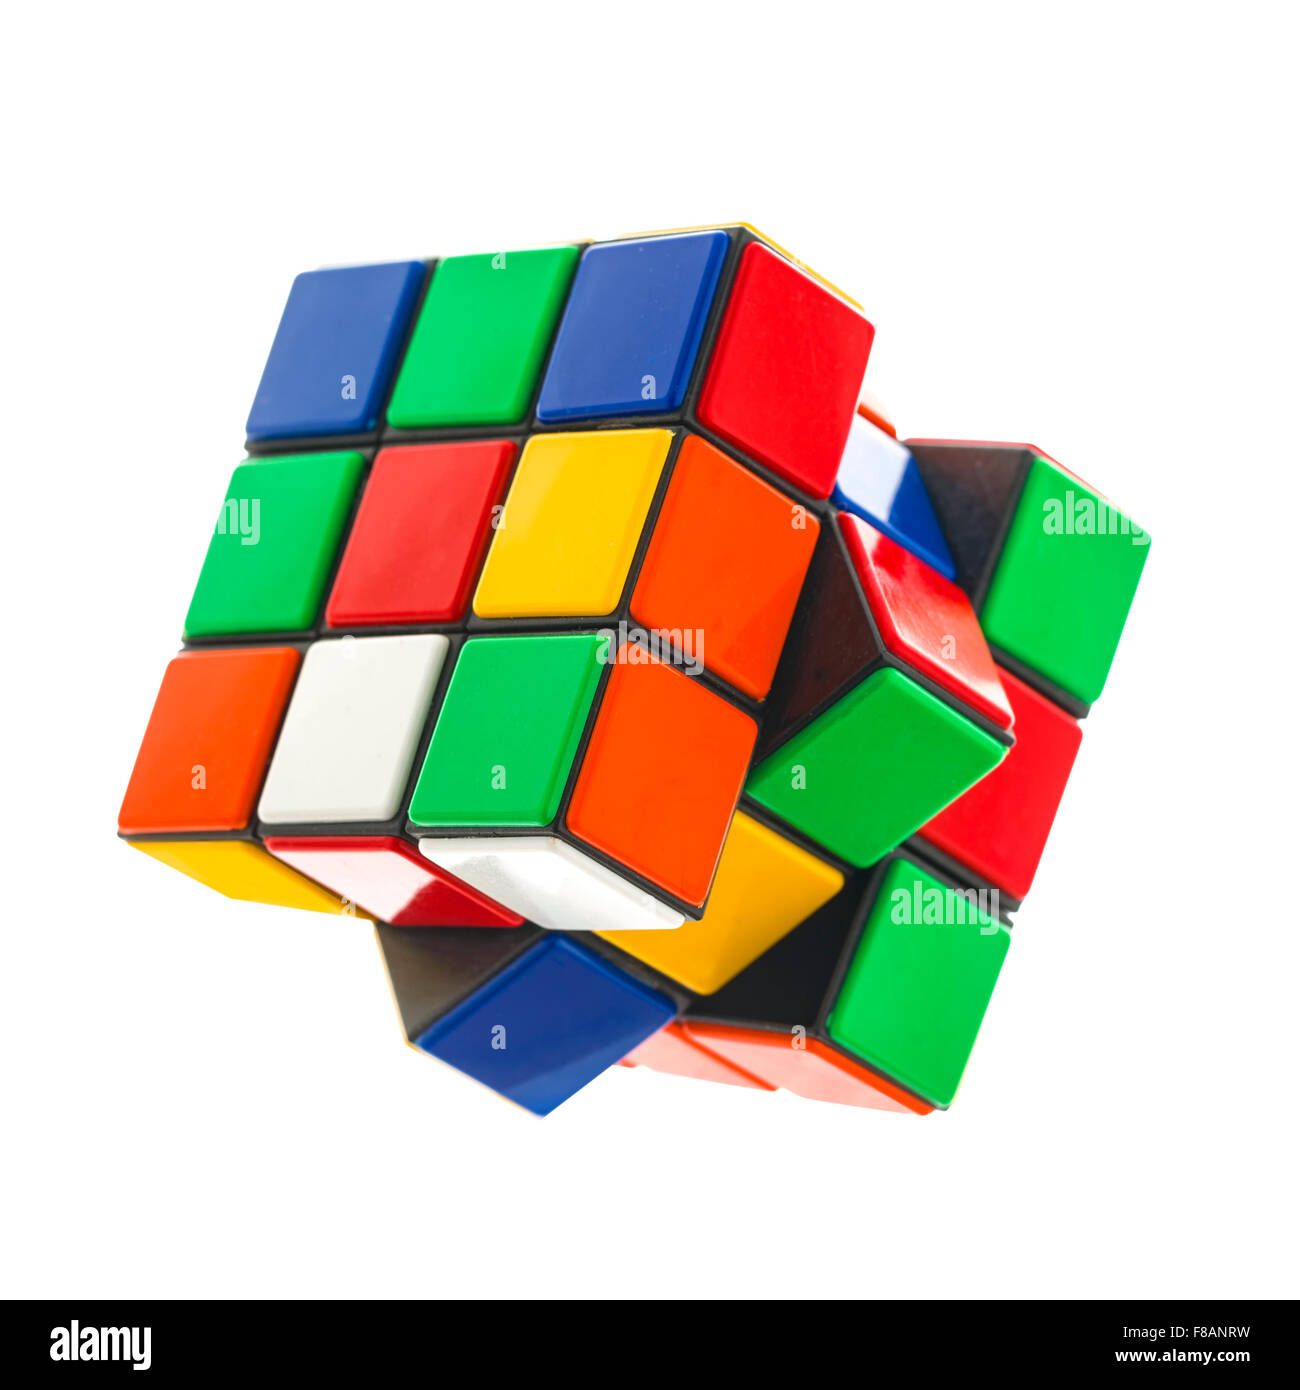 Rubiks Würfel auf weißem Grund. Rubiks Cube wurde 1974 von dem ungarischen Architekten Erno Rubik erfunden. Stockfoto